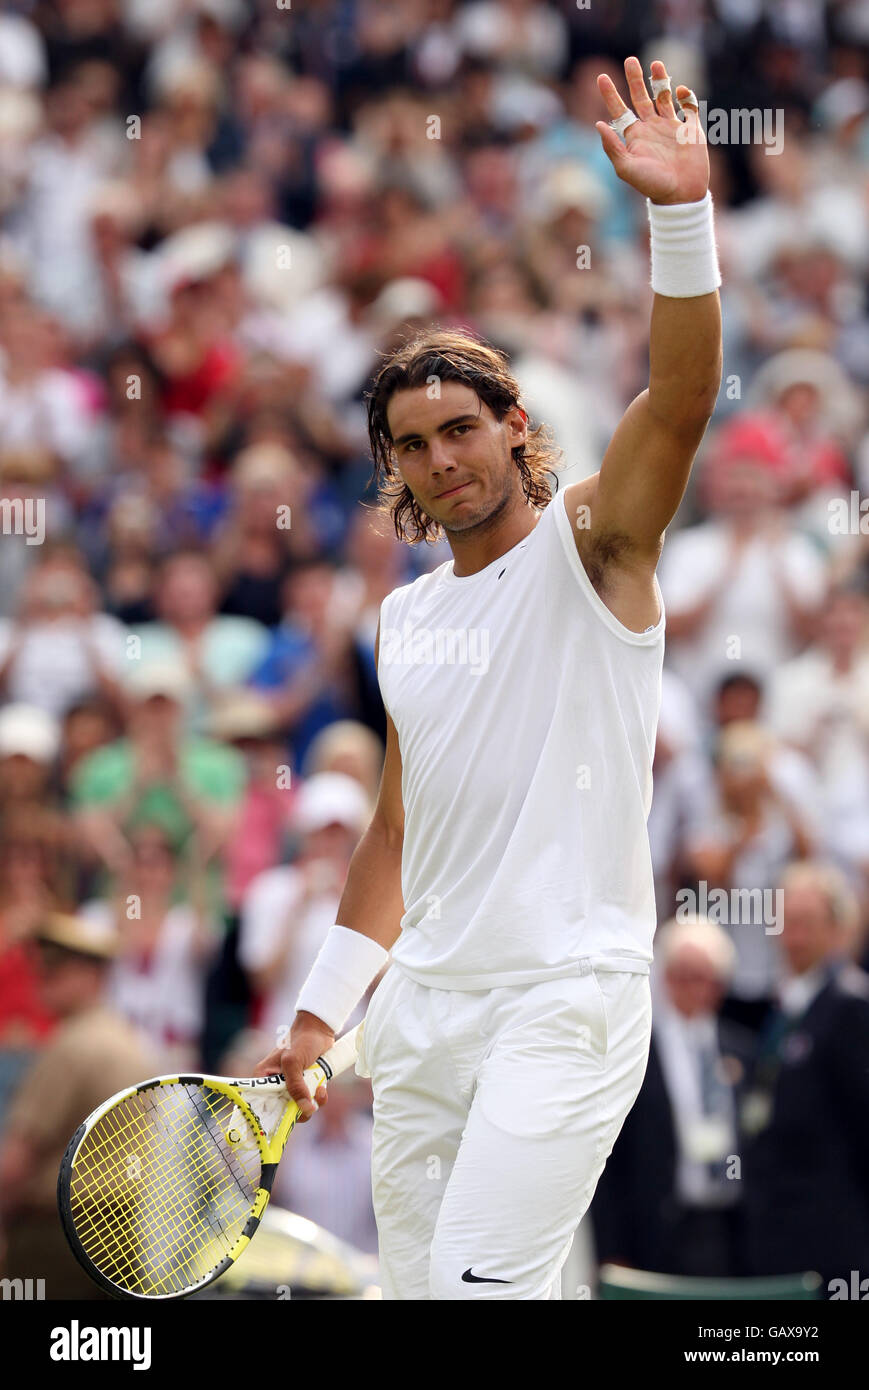 Tennis - Campionati di Wimbledon 2008 - giorno due - l'All England Club.  Rafael Nadal celebra la vittoria contro Andreas Beck Foto stock - Alamy